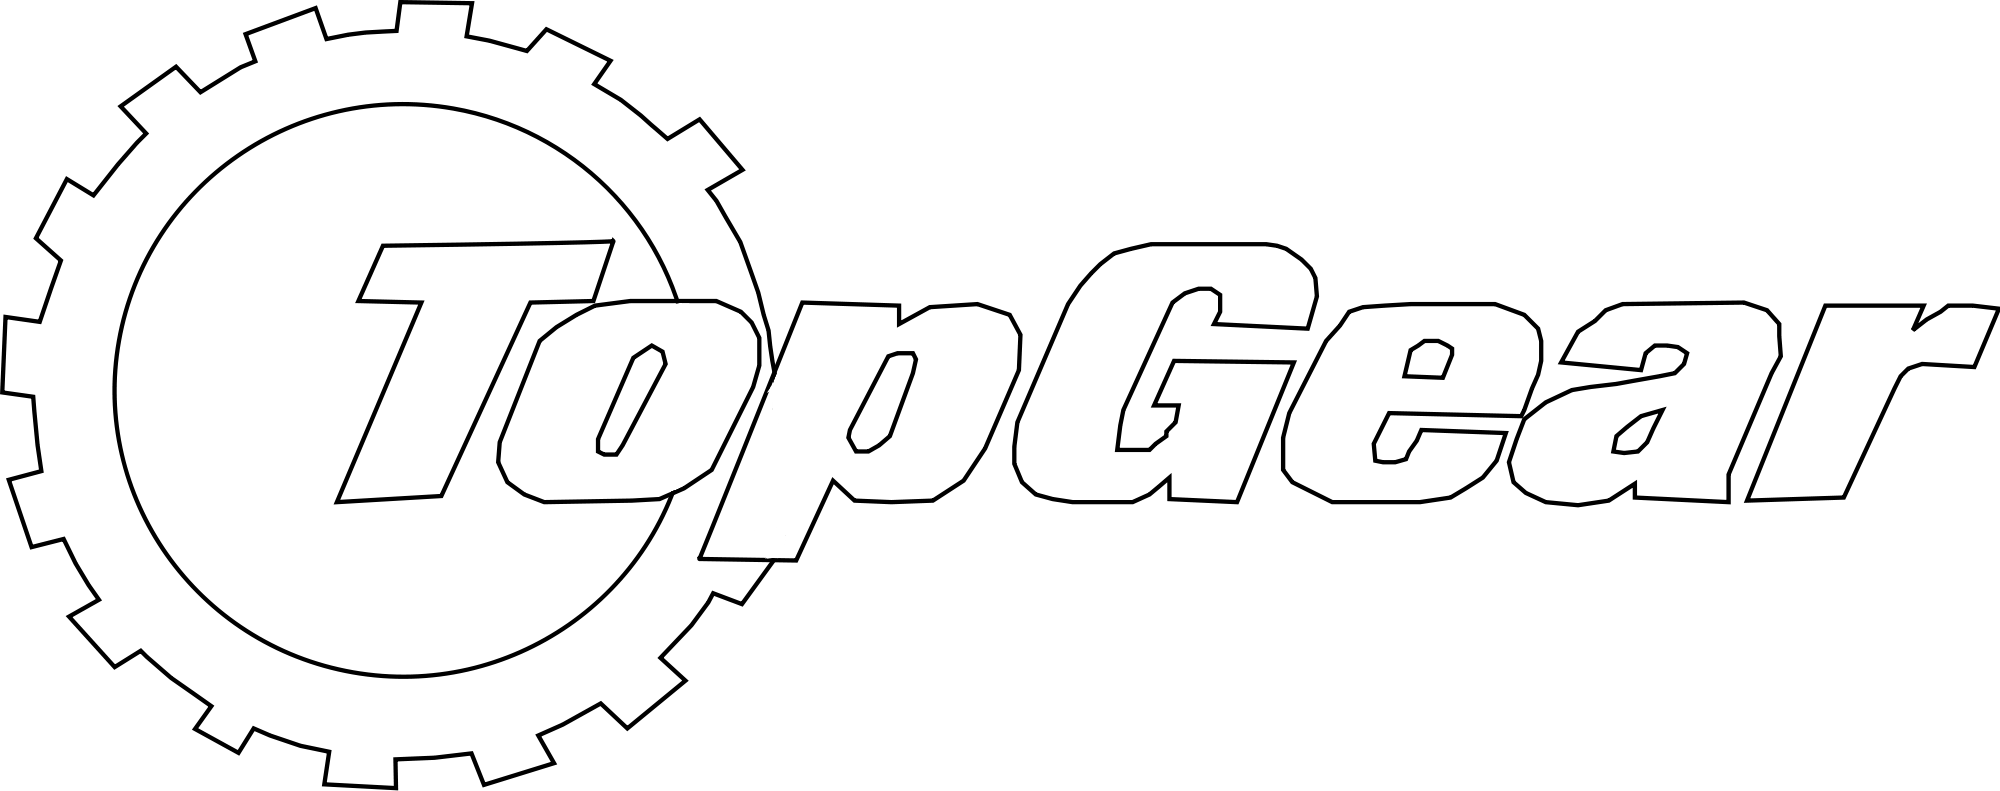 Top Gear Logo - File:Top gear fullsize.svg - Wikimedia Commons